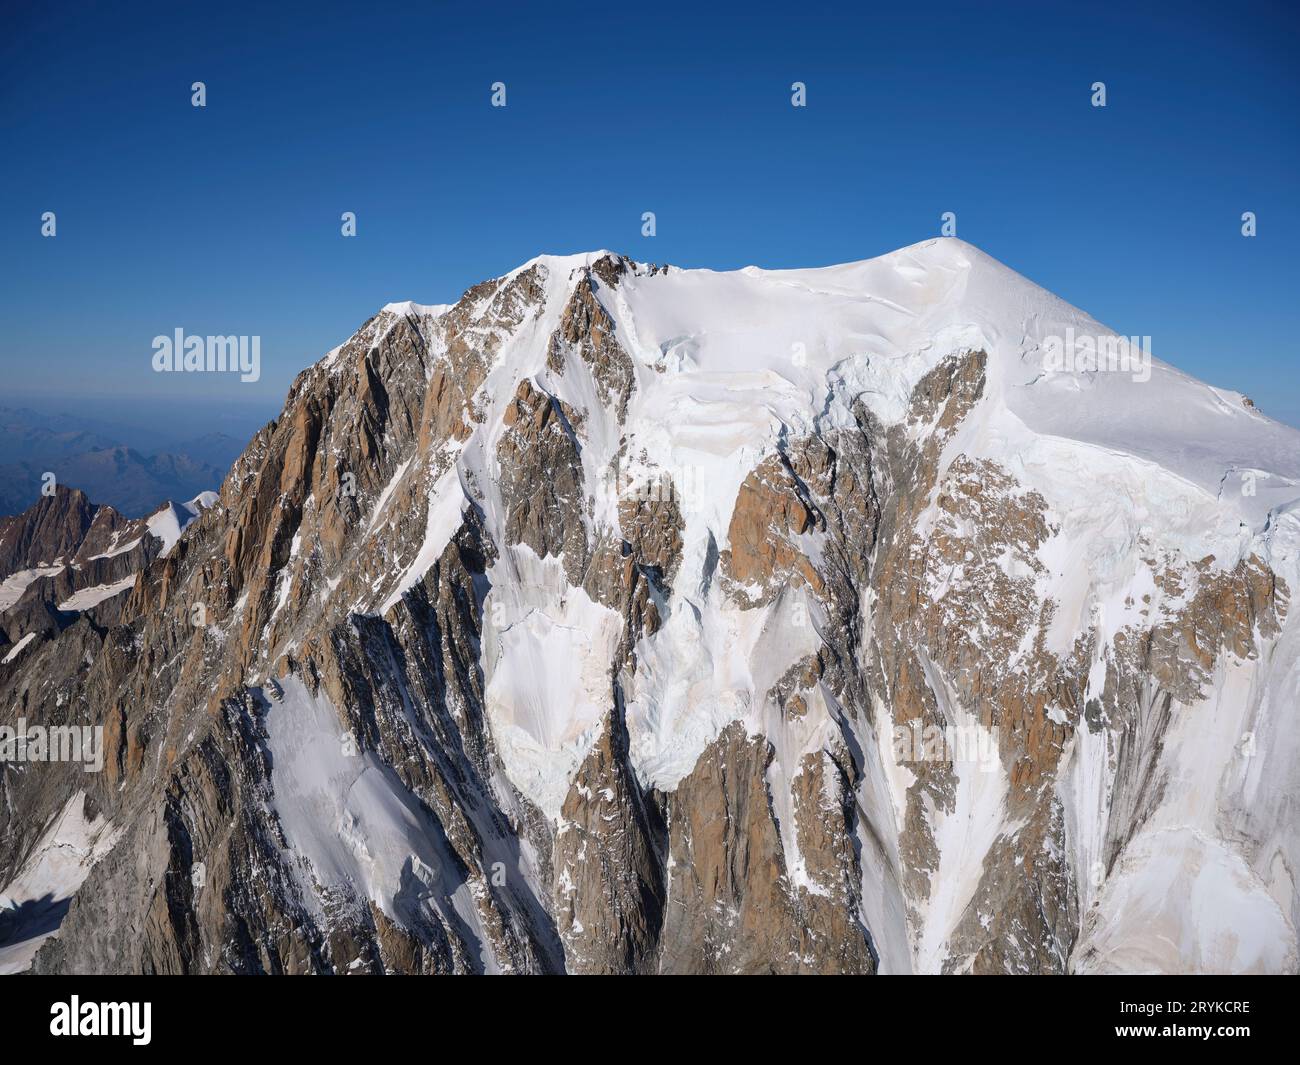 LUFTAUFNAHME. Italienische Seite des Mont Blanc (Höhe: 4805 bis 4810 Meter, je nach Schneesack). Courmayeur, Aostatal, Italien. Stockfoto